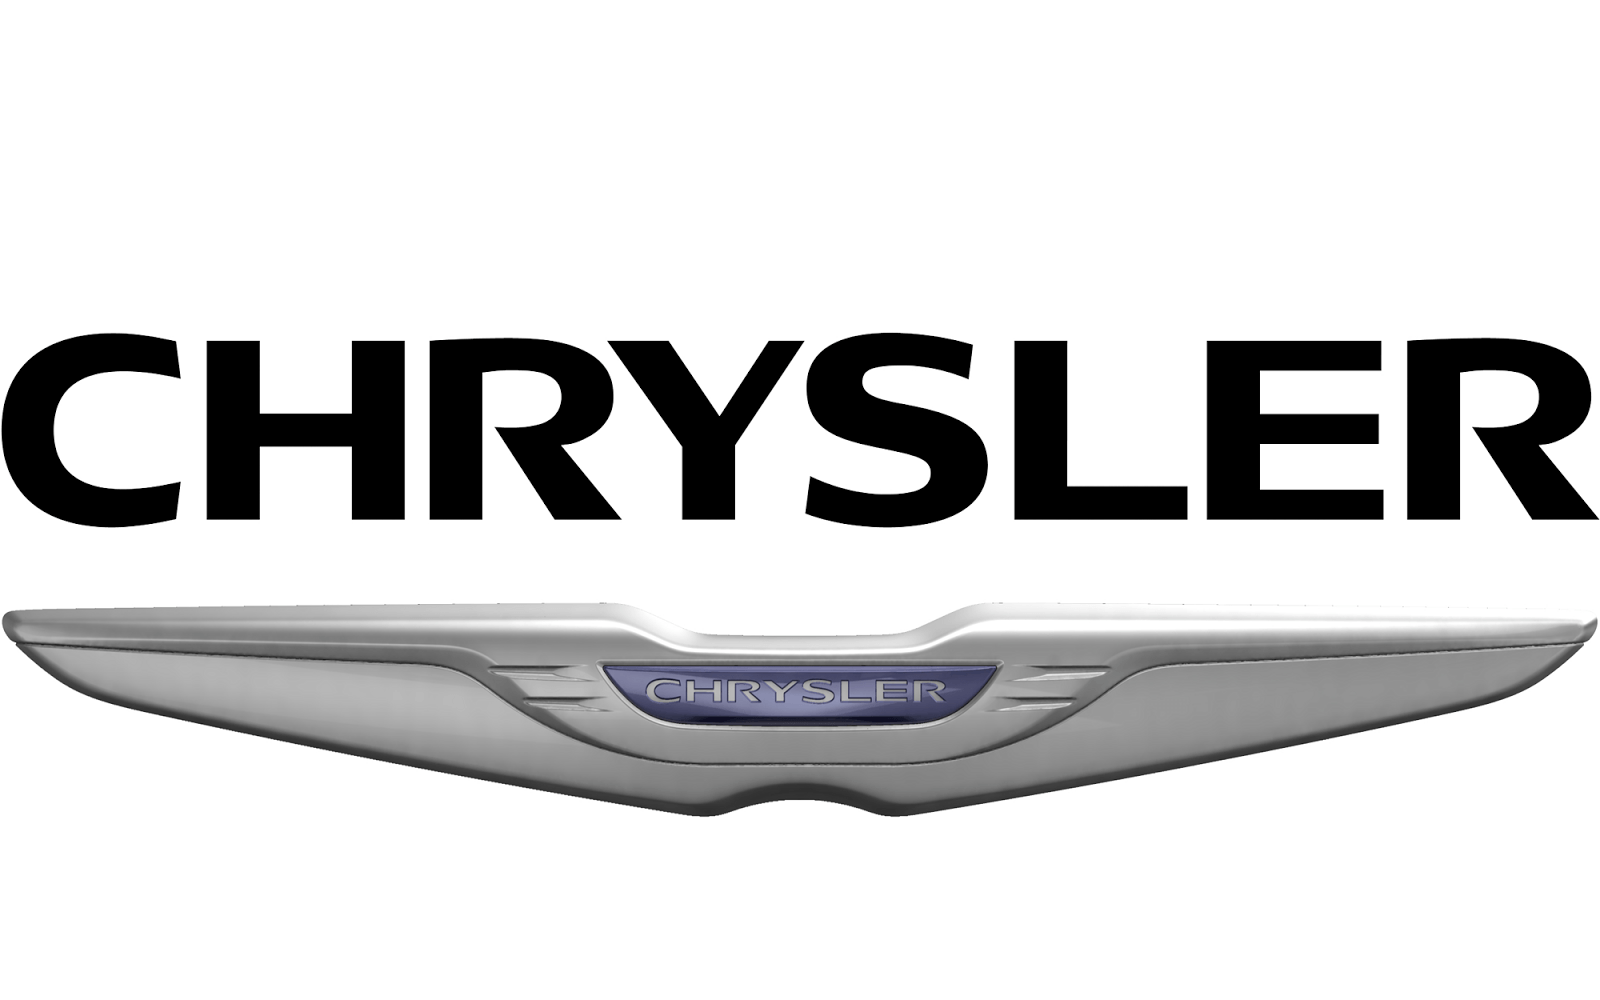 New Chrysler Logo - Chrysler car Logos